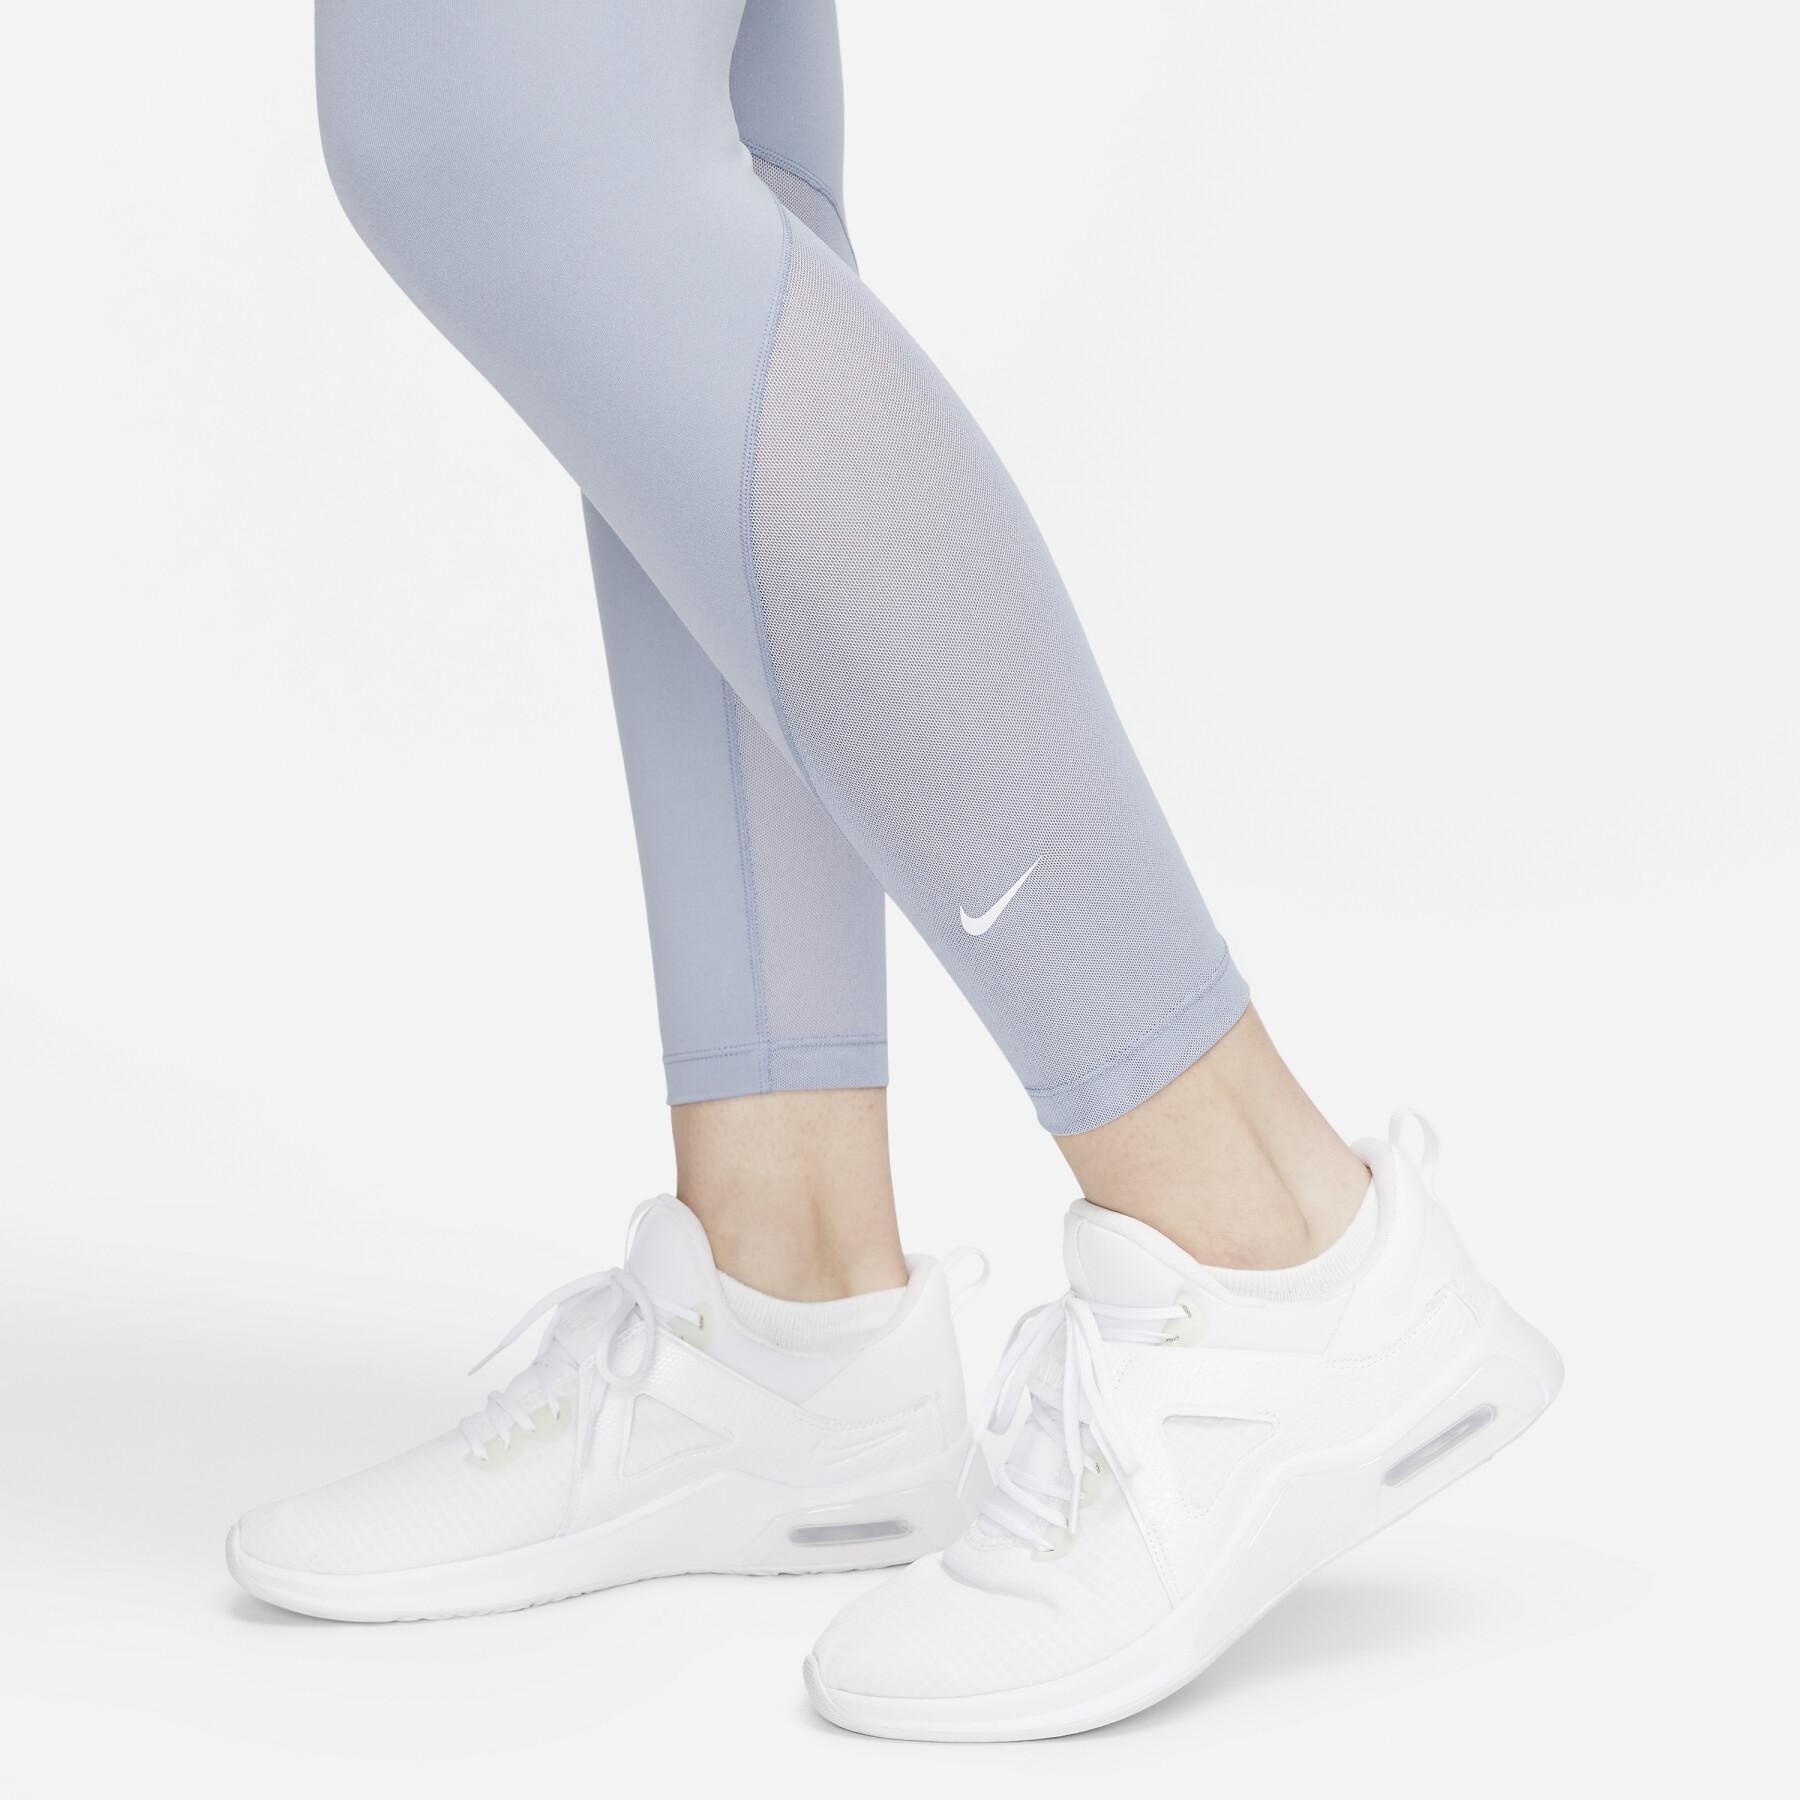 Legging 7/8 mulher de altura média Nike One